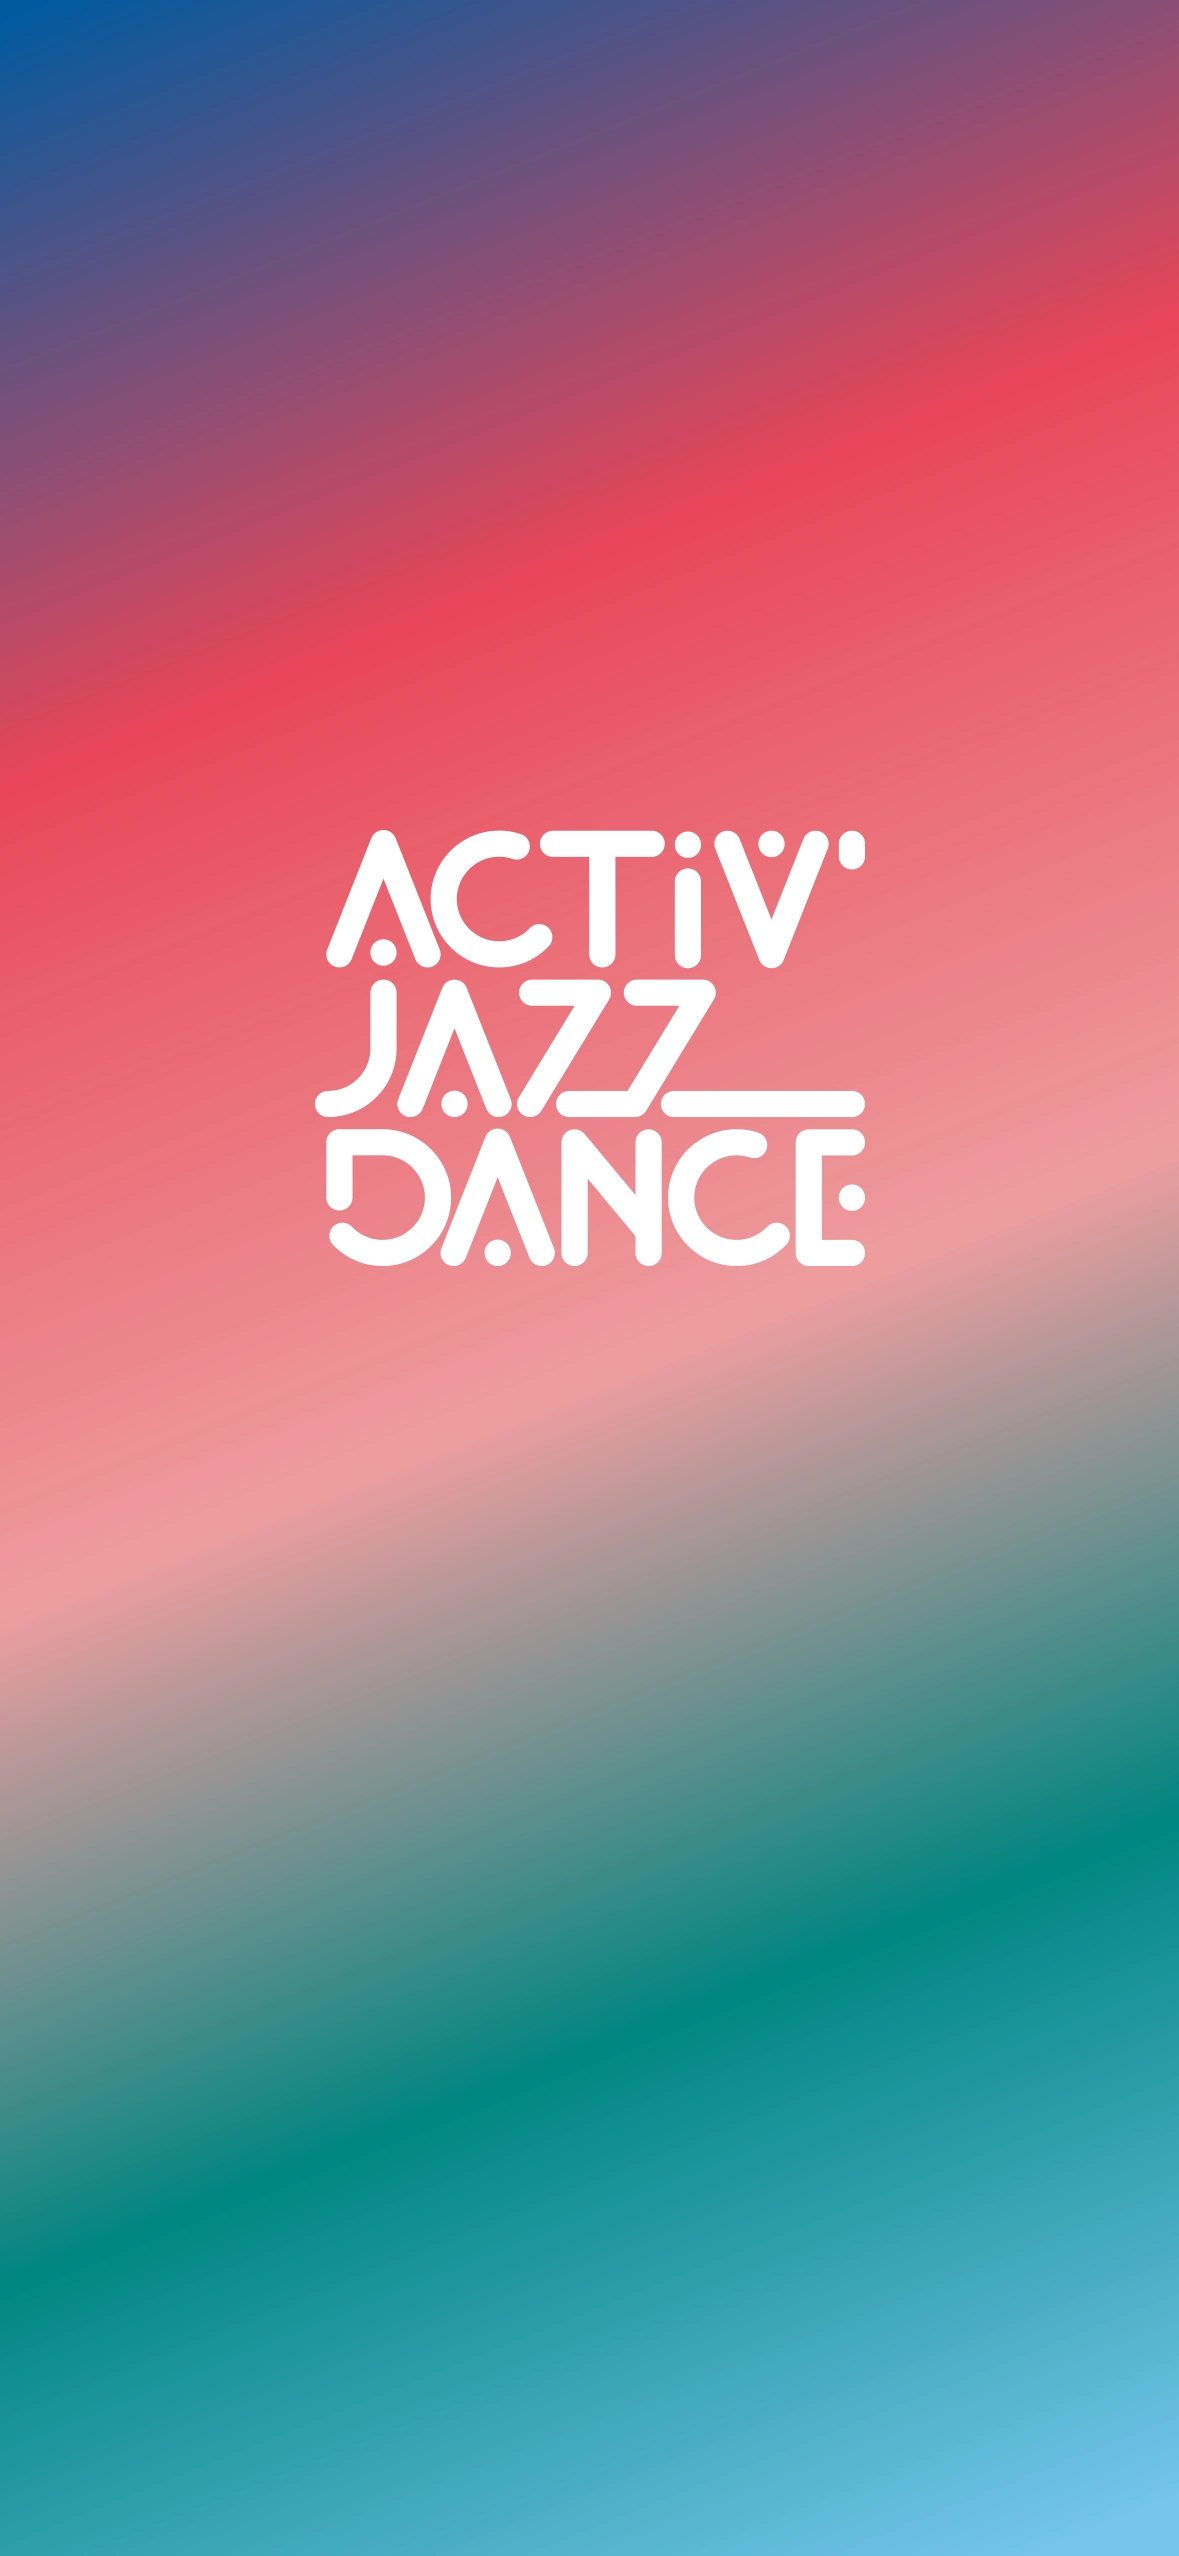 logo activ jazz danse sur un fond dégradé de violet, rose, bleu et vert